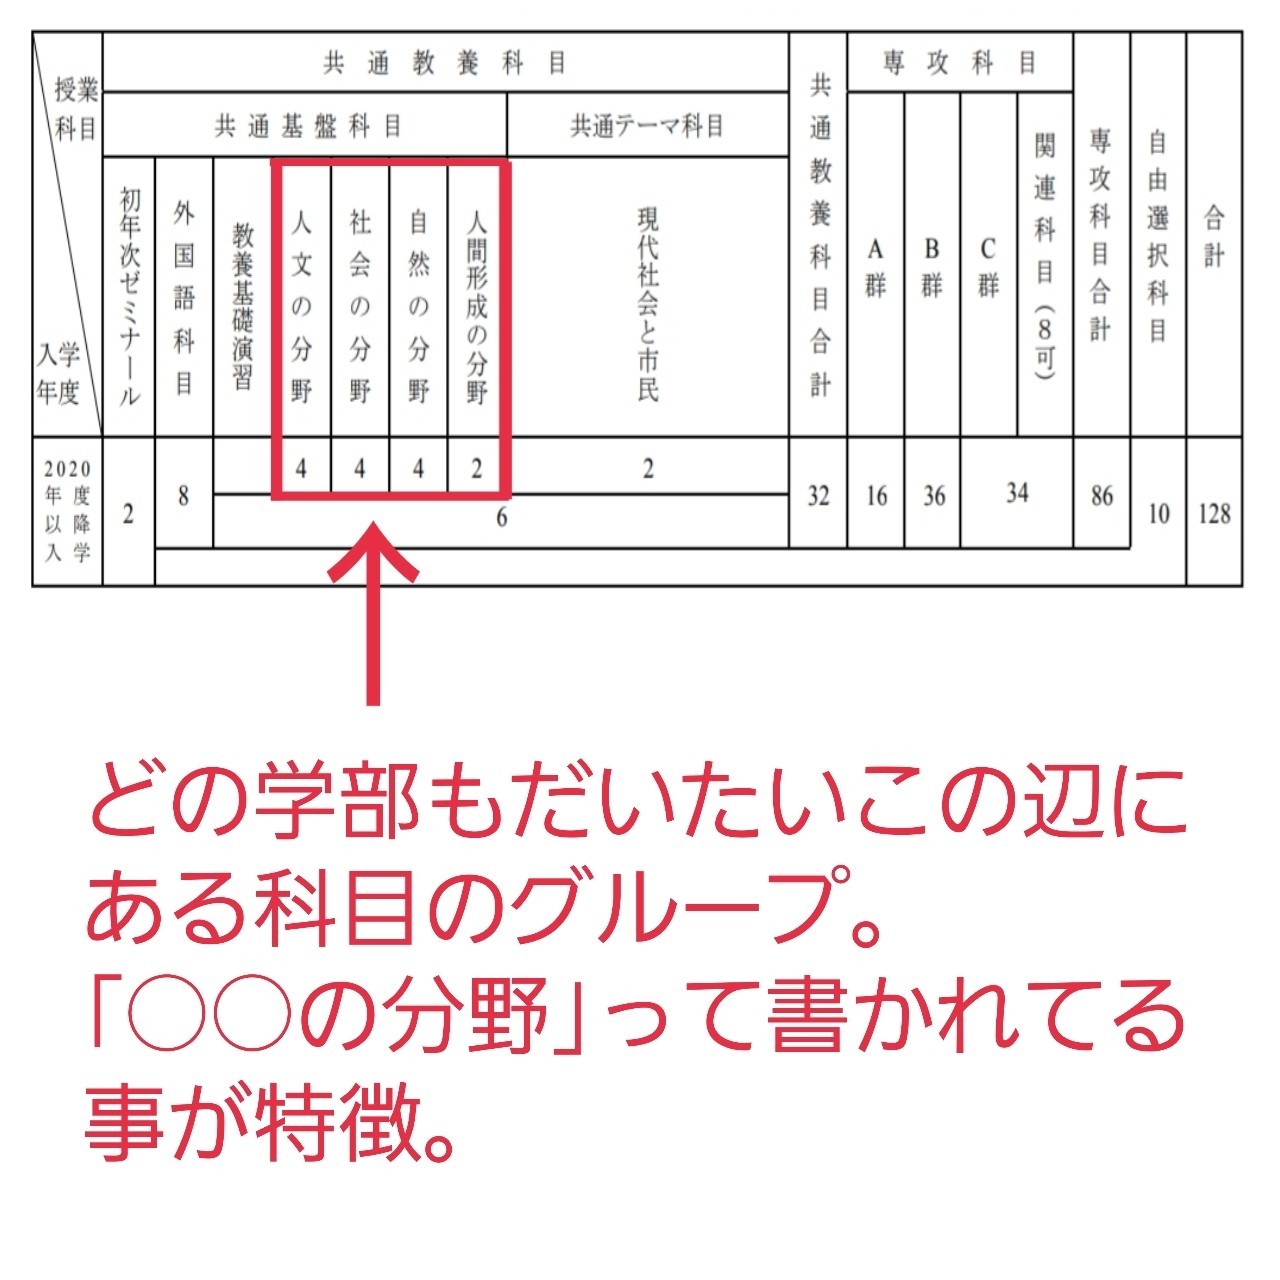 神奈川大学 履修登録ガイドブック 全学部全学科対応 Ver 2 0 ゆづき Note